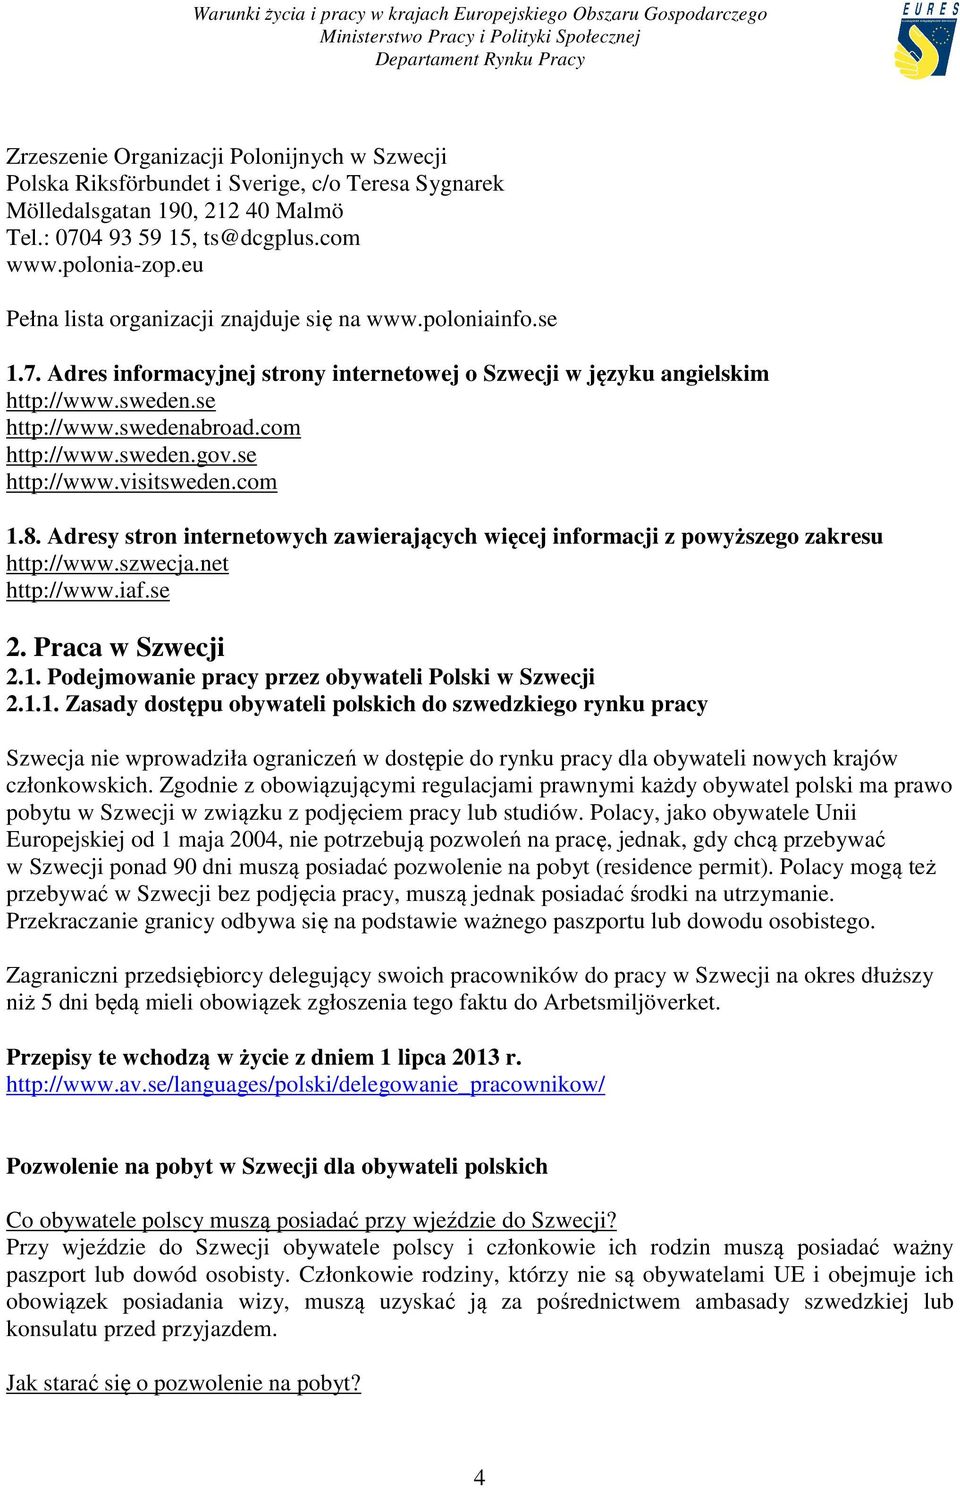 sweden.gov.se http://www.visitsweden.com 1.8. Adresy stron internetowych zawierających więcej informacji z powyższego zakresu http://www.szwecja.net http://www.iaf.se 2. Praca w Szwecji 2.1. Podejmowanie pracy przez obywateli Polski w Szwecji 2.